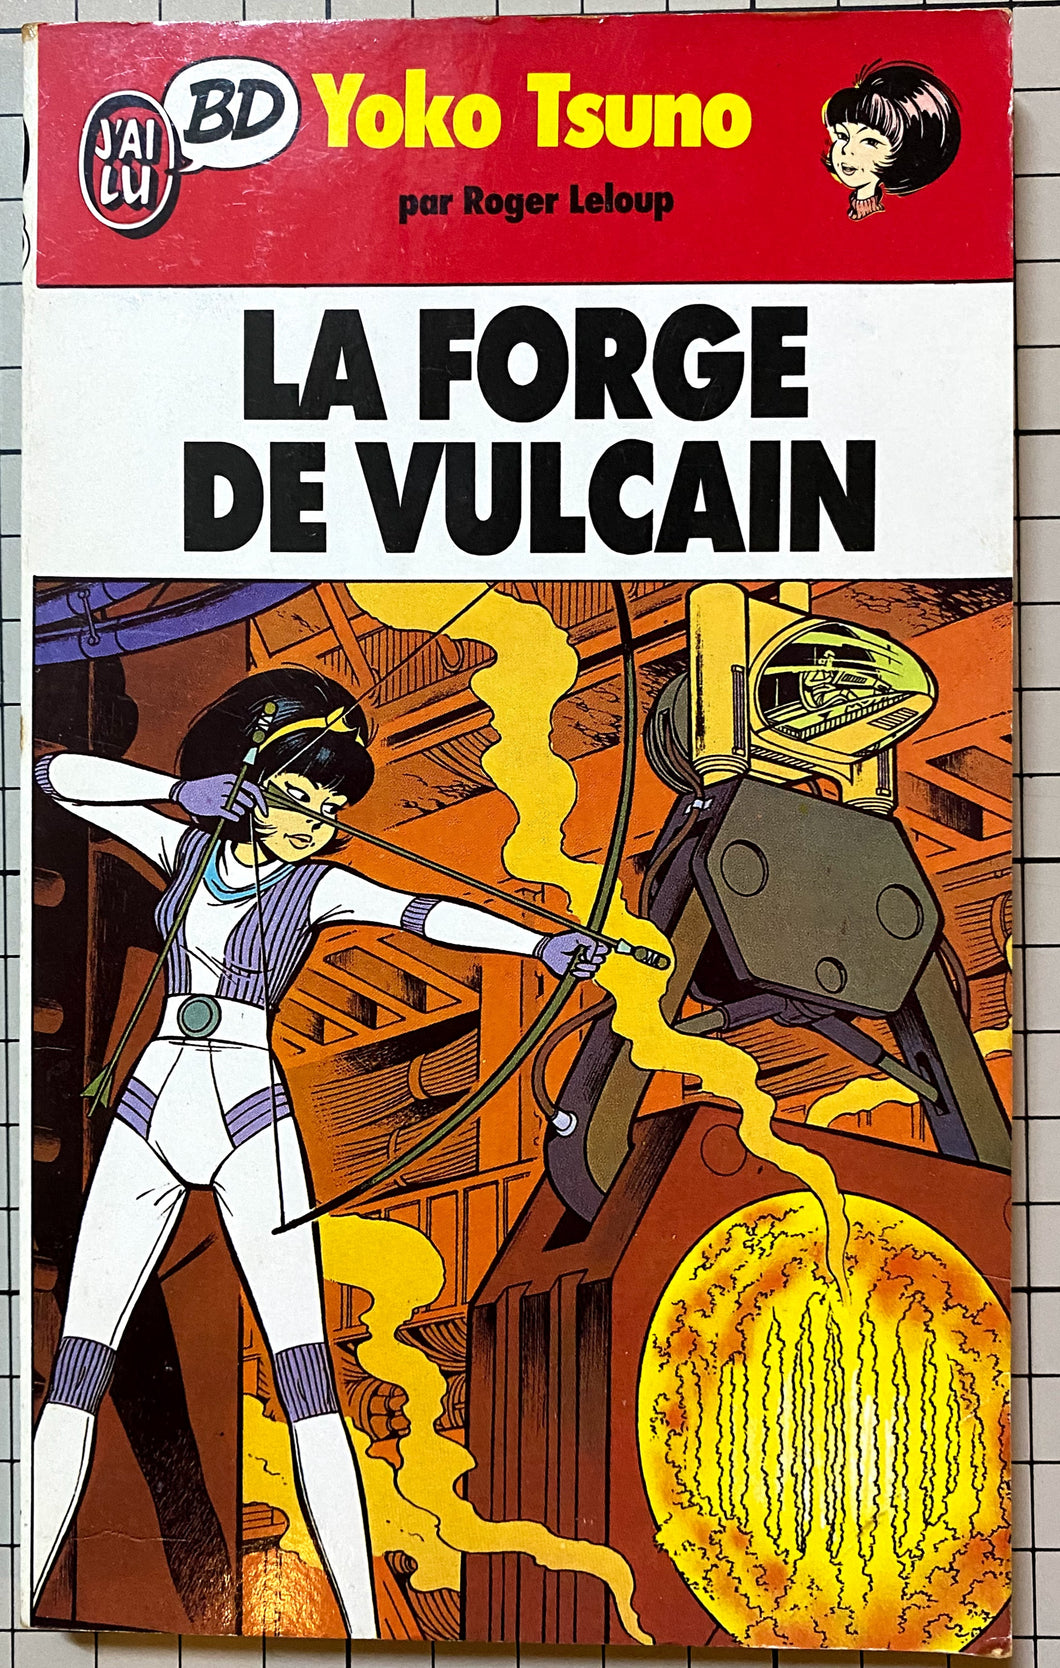 La Forge de Vulcain : Roger Leloup